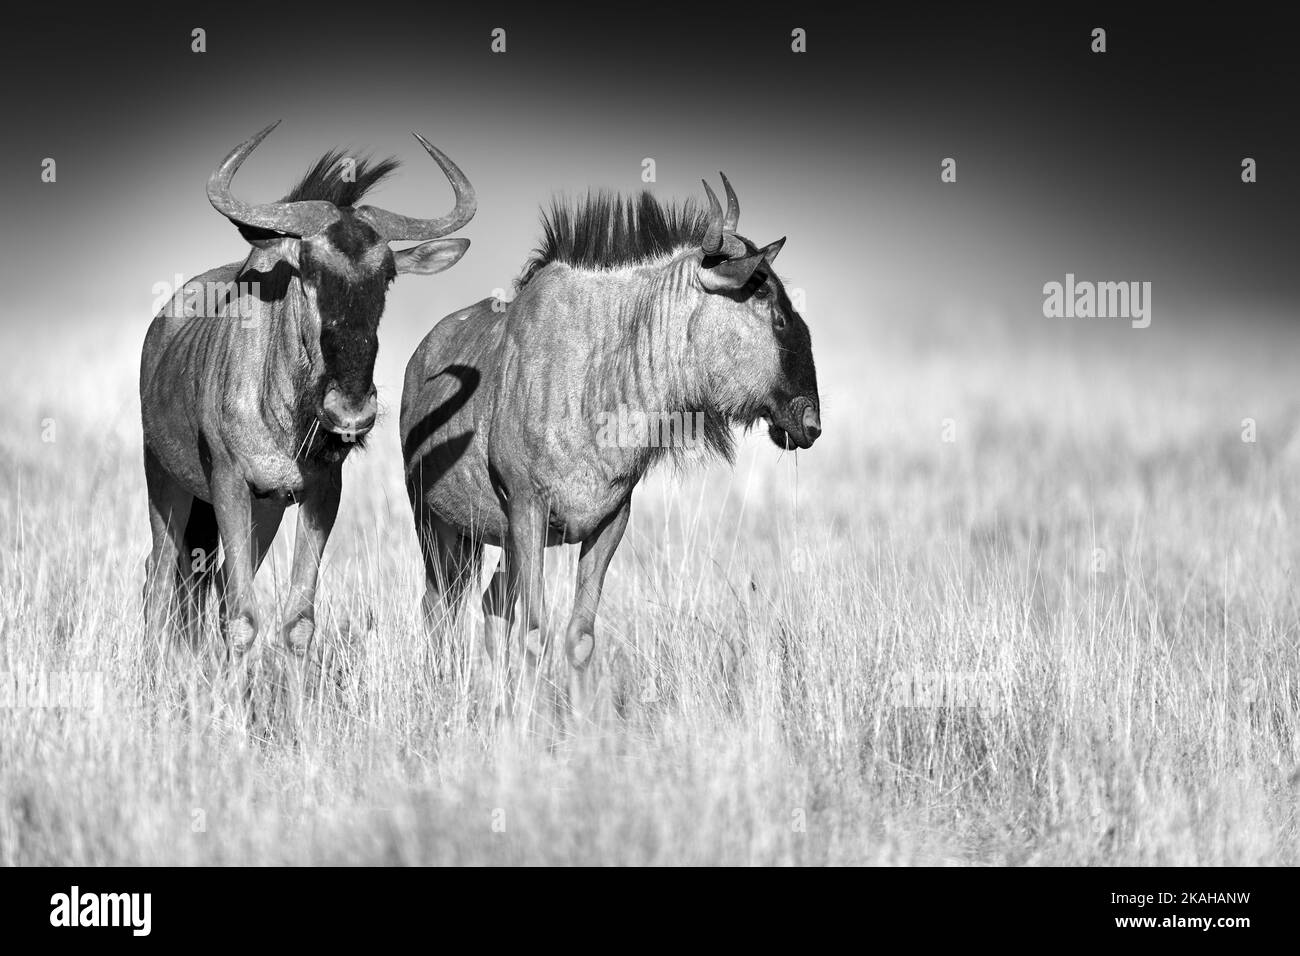 Elaborazione artistica in bianco e nero fotografia di due wildebeest su sfondo scuro, in piedi in savana erba. Namibia, safari Etosha. Foto Stock